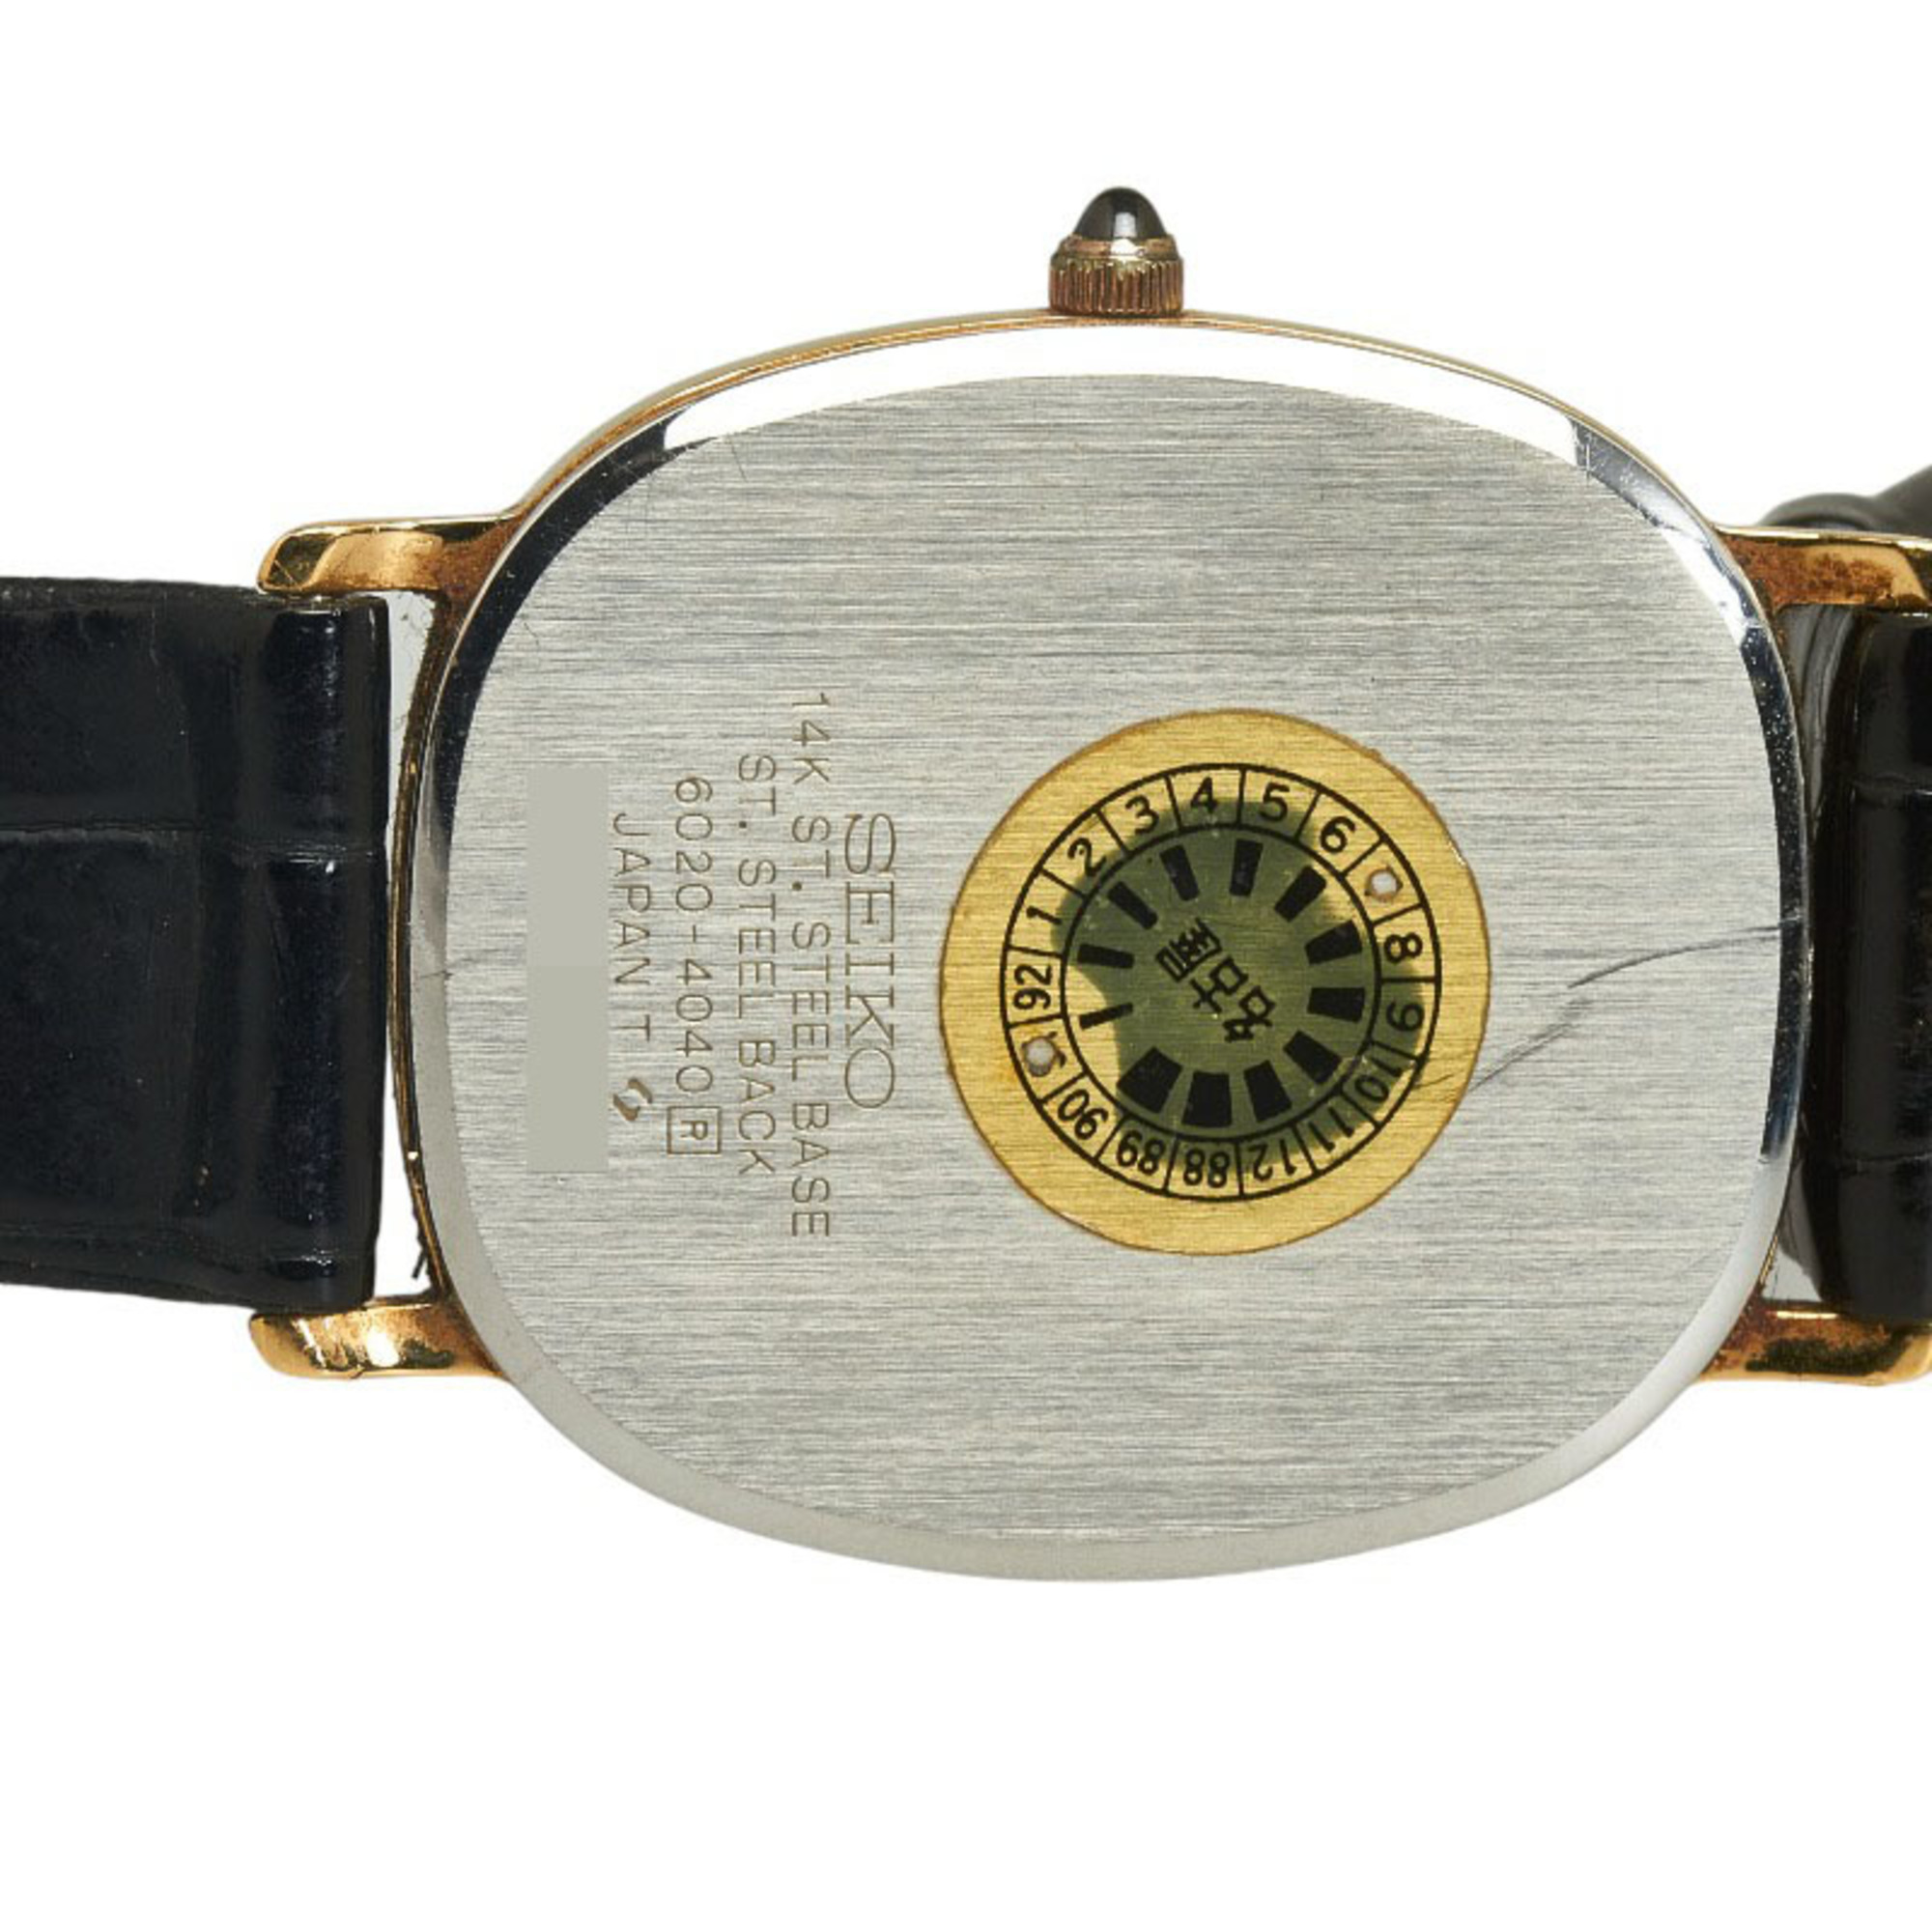 Seiko Dolce Watch 6020 4040 Quartz Gold Dial K14 Stainless Steel Leather Ladies SEIKO